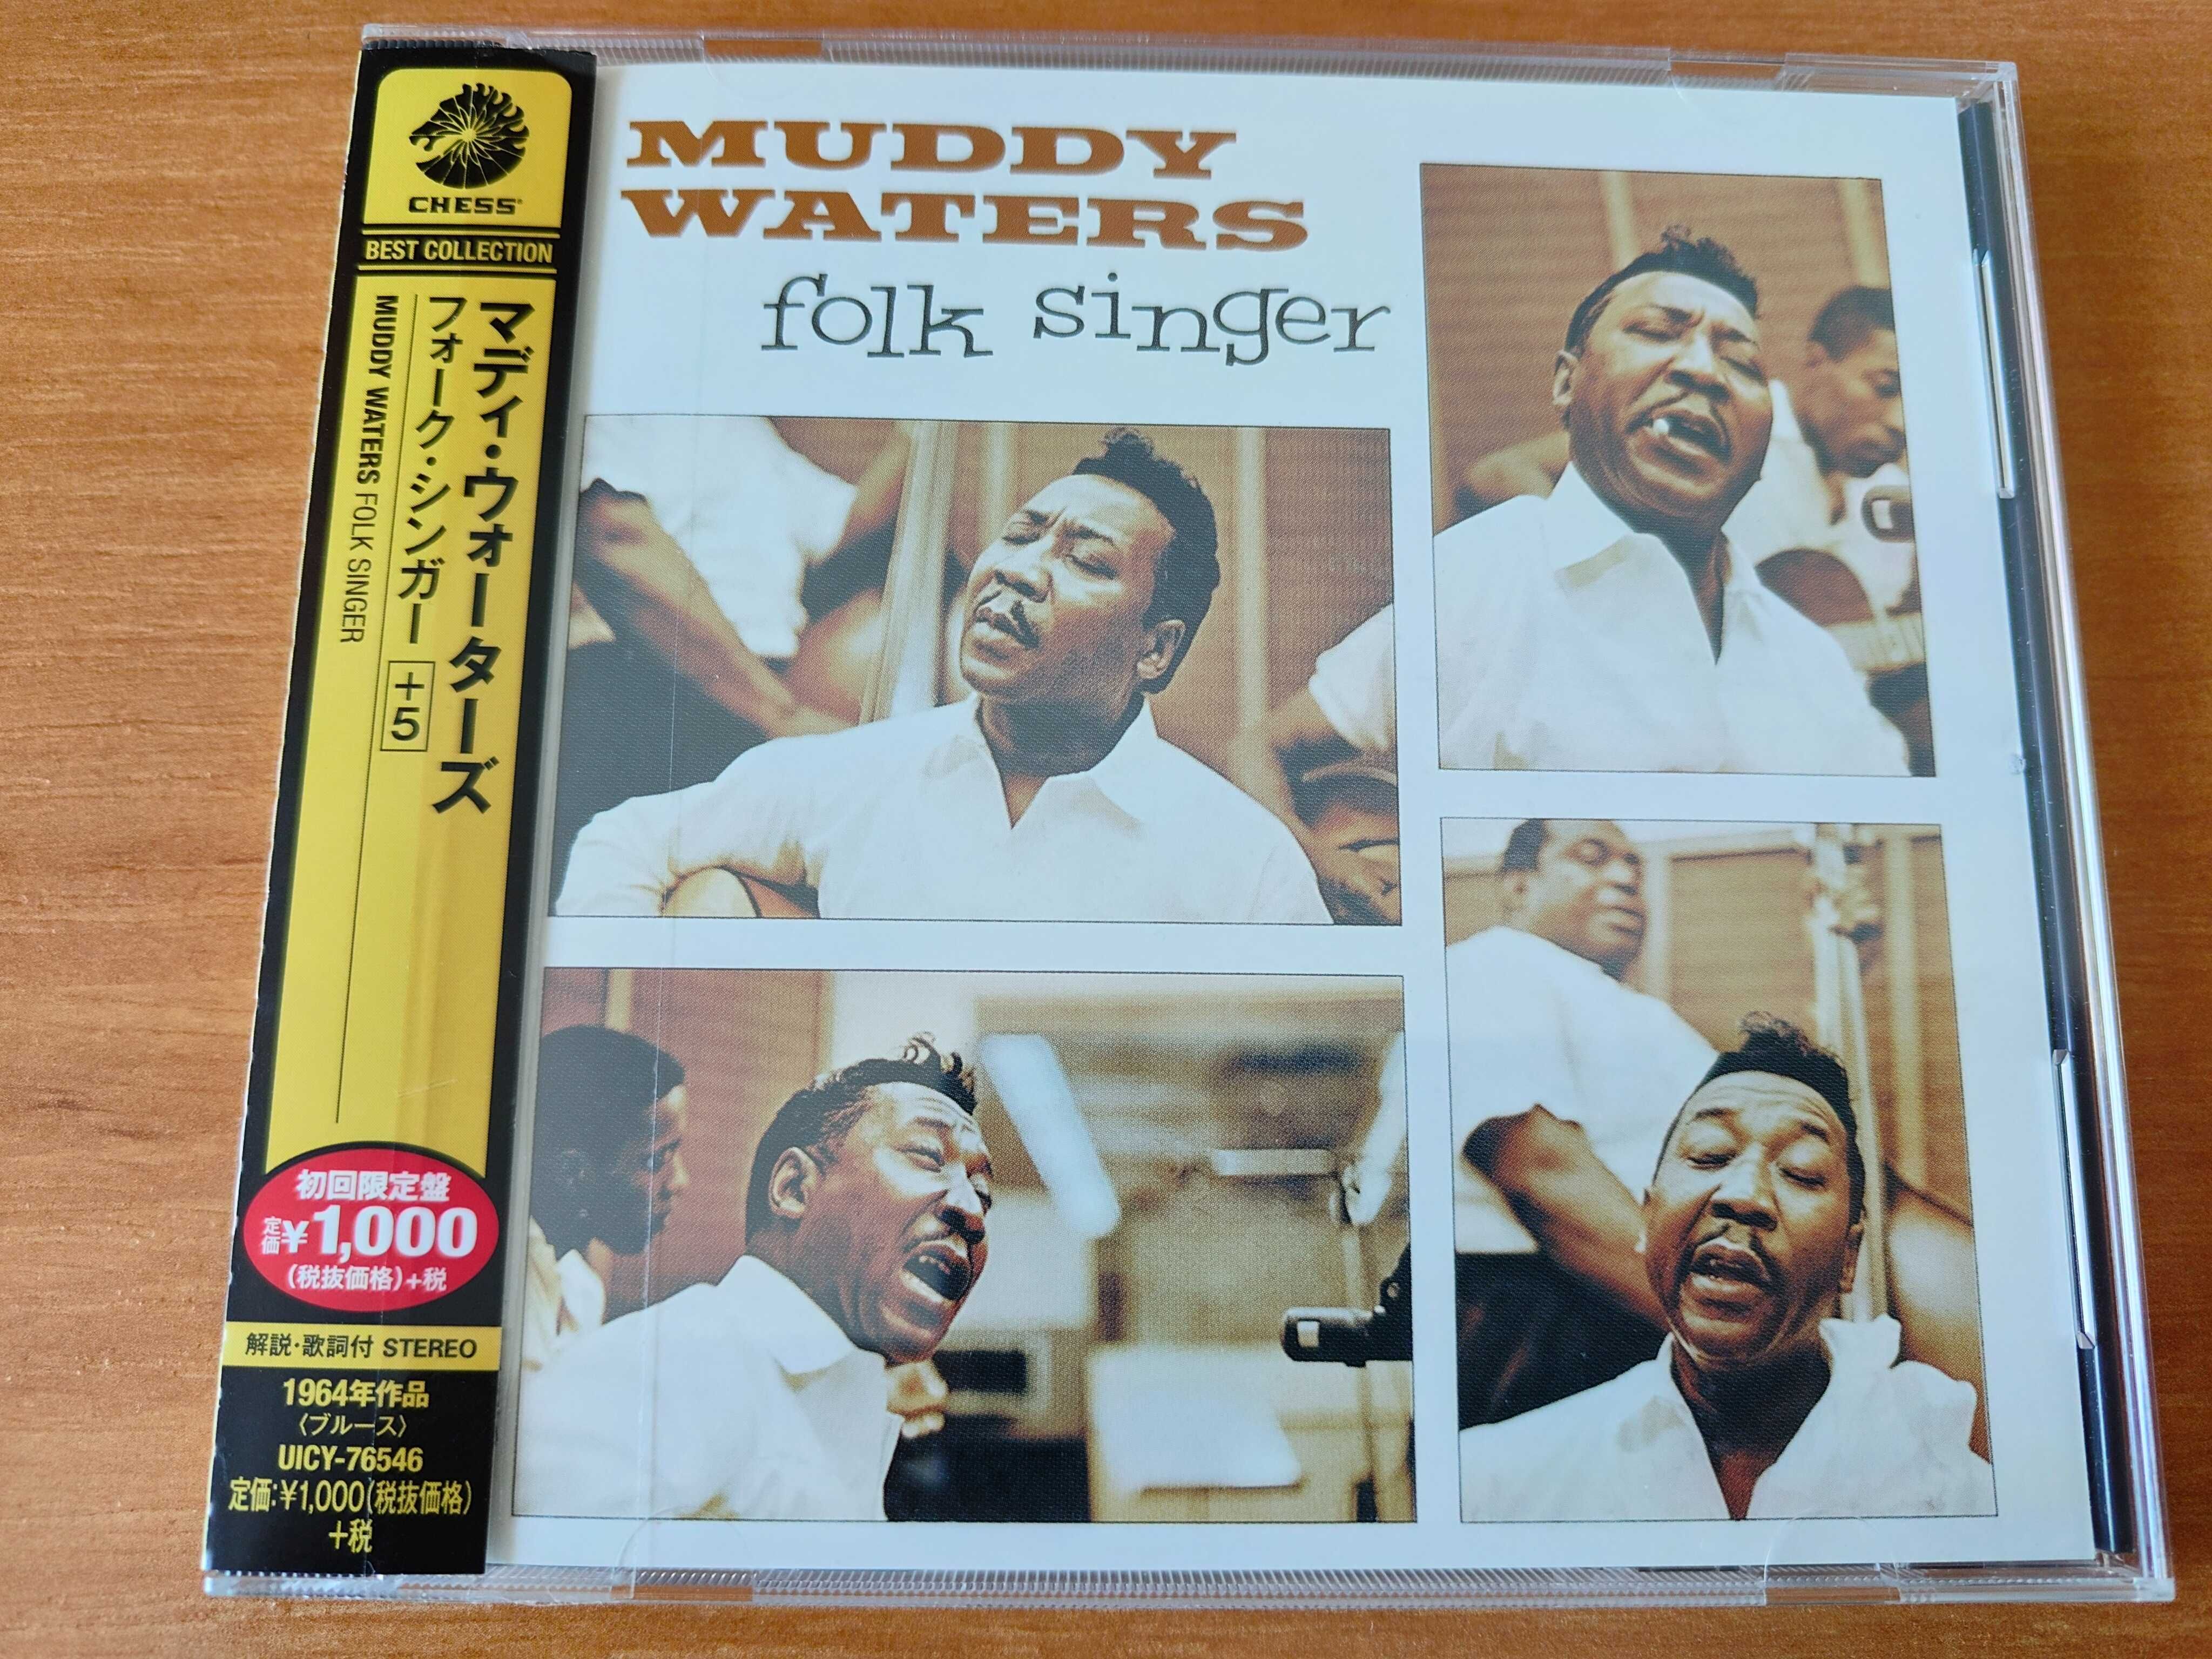 Płyta Muddy Waters folk singer CD wydanie Made in Japan